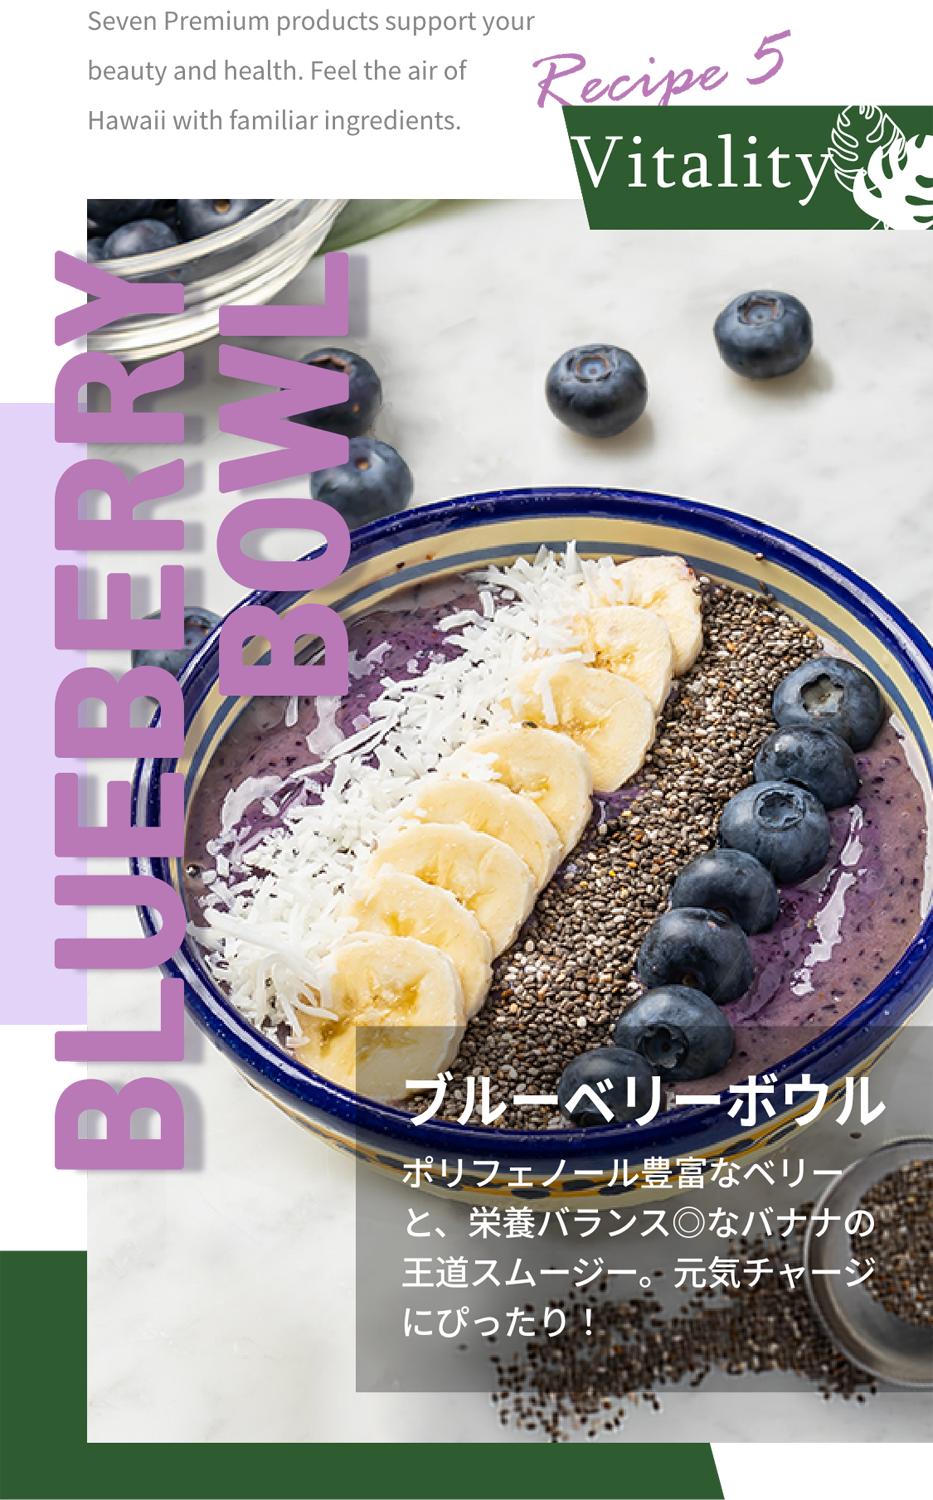 Recipe5 Vitality BLUEBERRY BOWL ブルーベリーボウル ポリフェノール豊富なベリーと、栄養バランス◎なバナナの王道スムージー、元気チャージにぴったり！